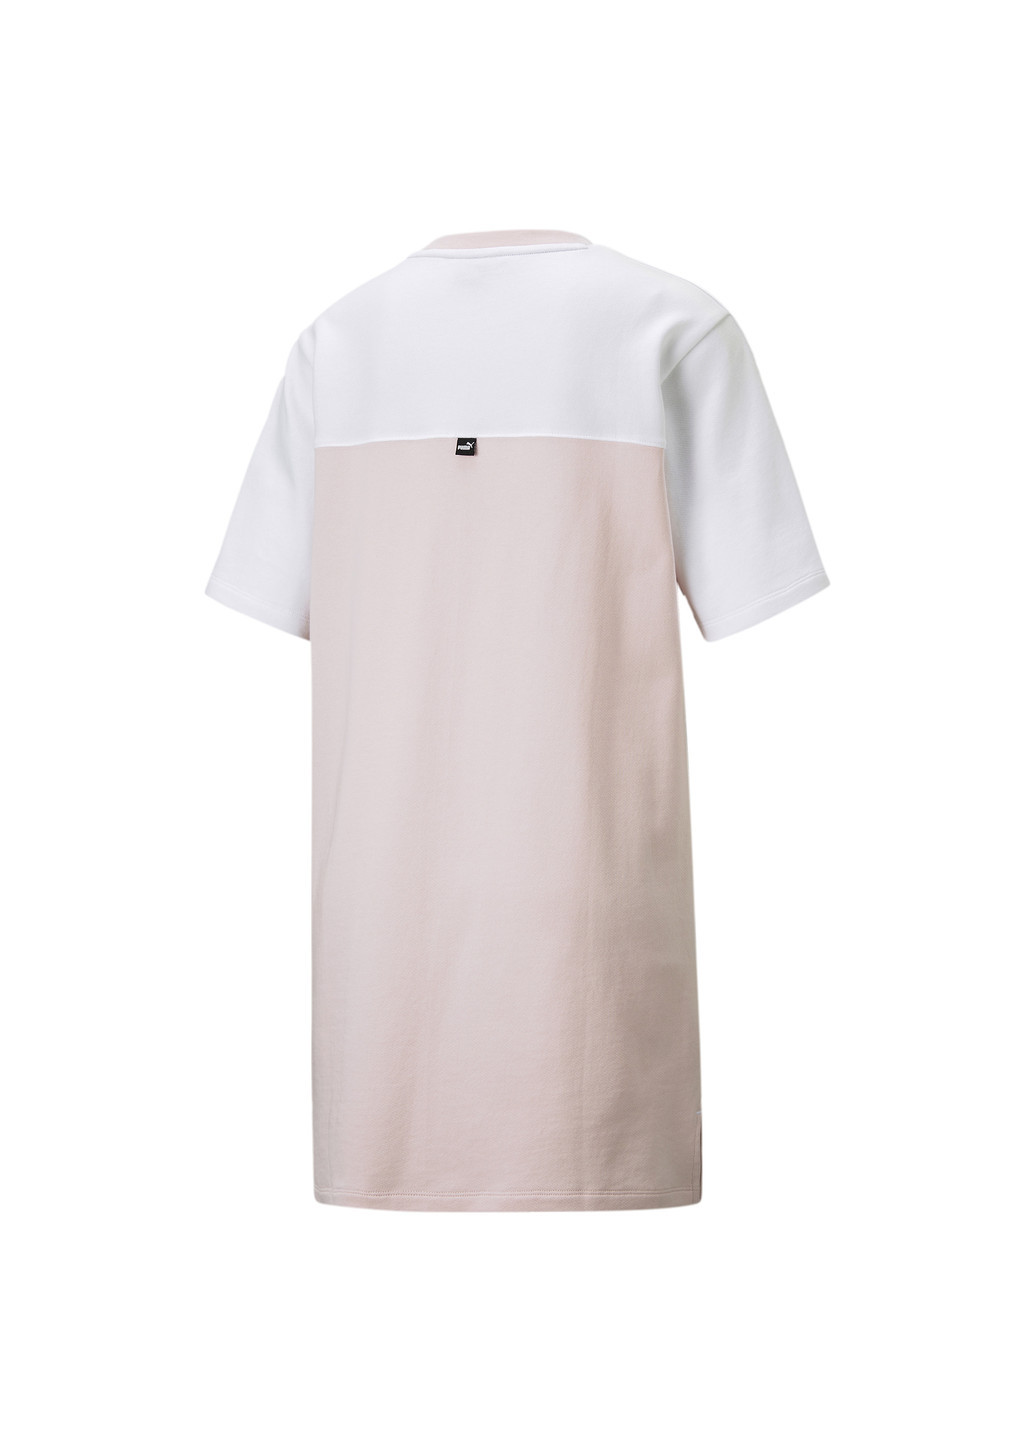 Платье Power Women's Tee Dress Puma однотонная розовая спортивная хлопок, эластан